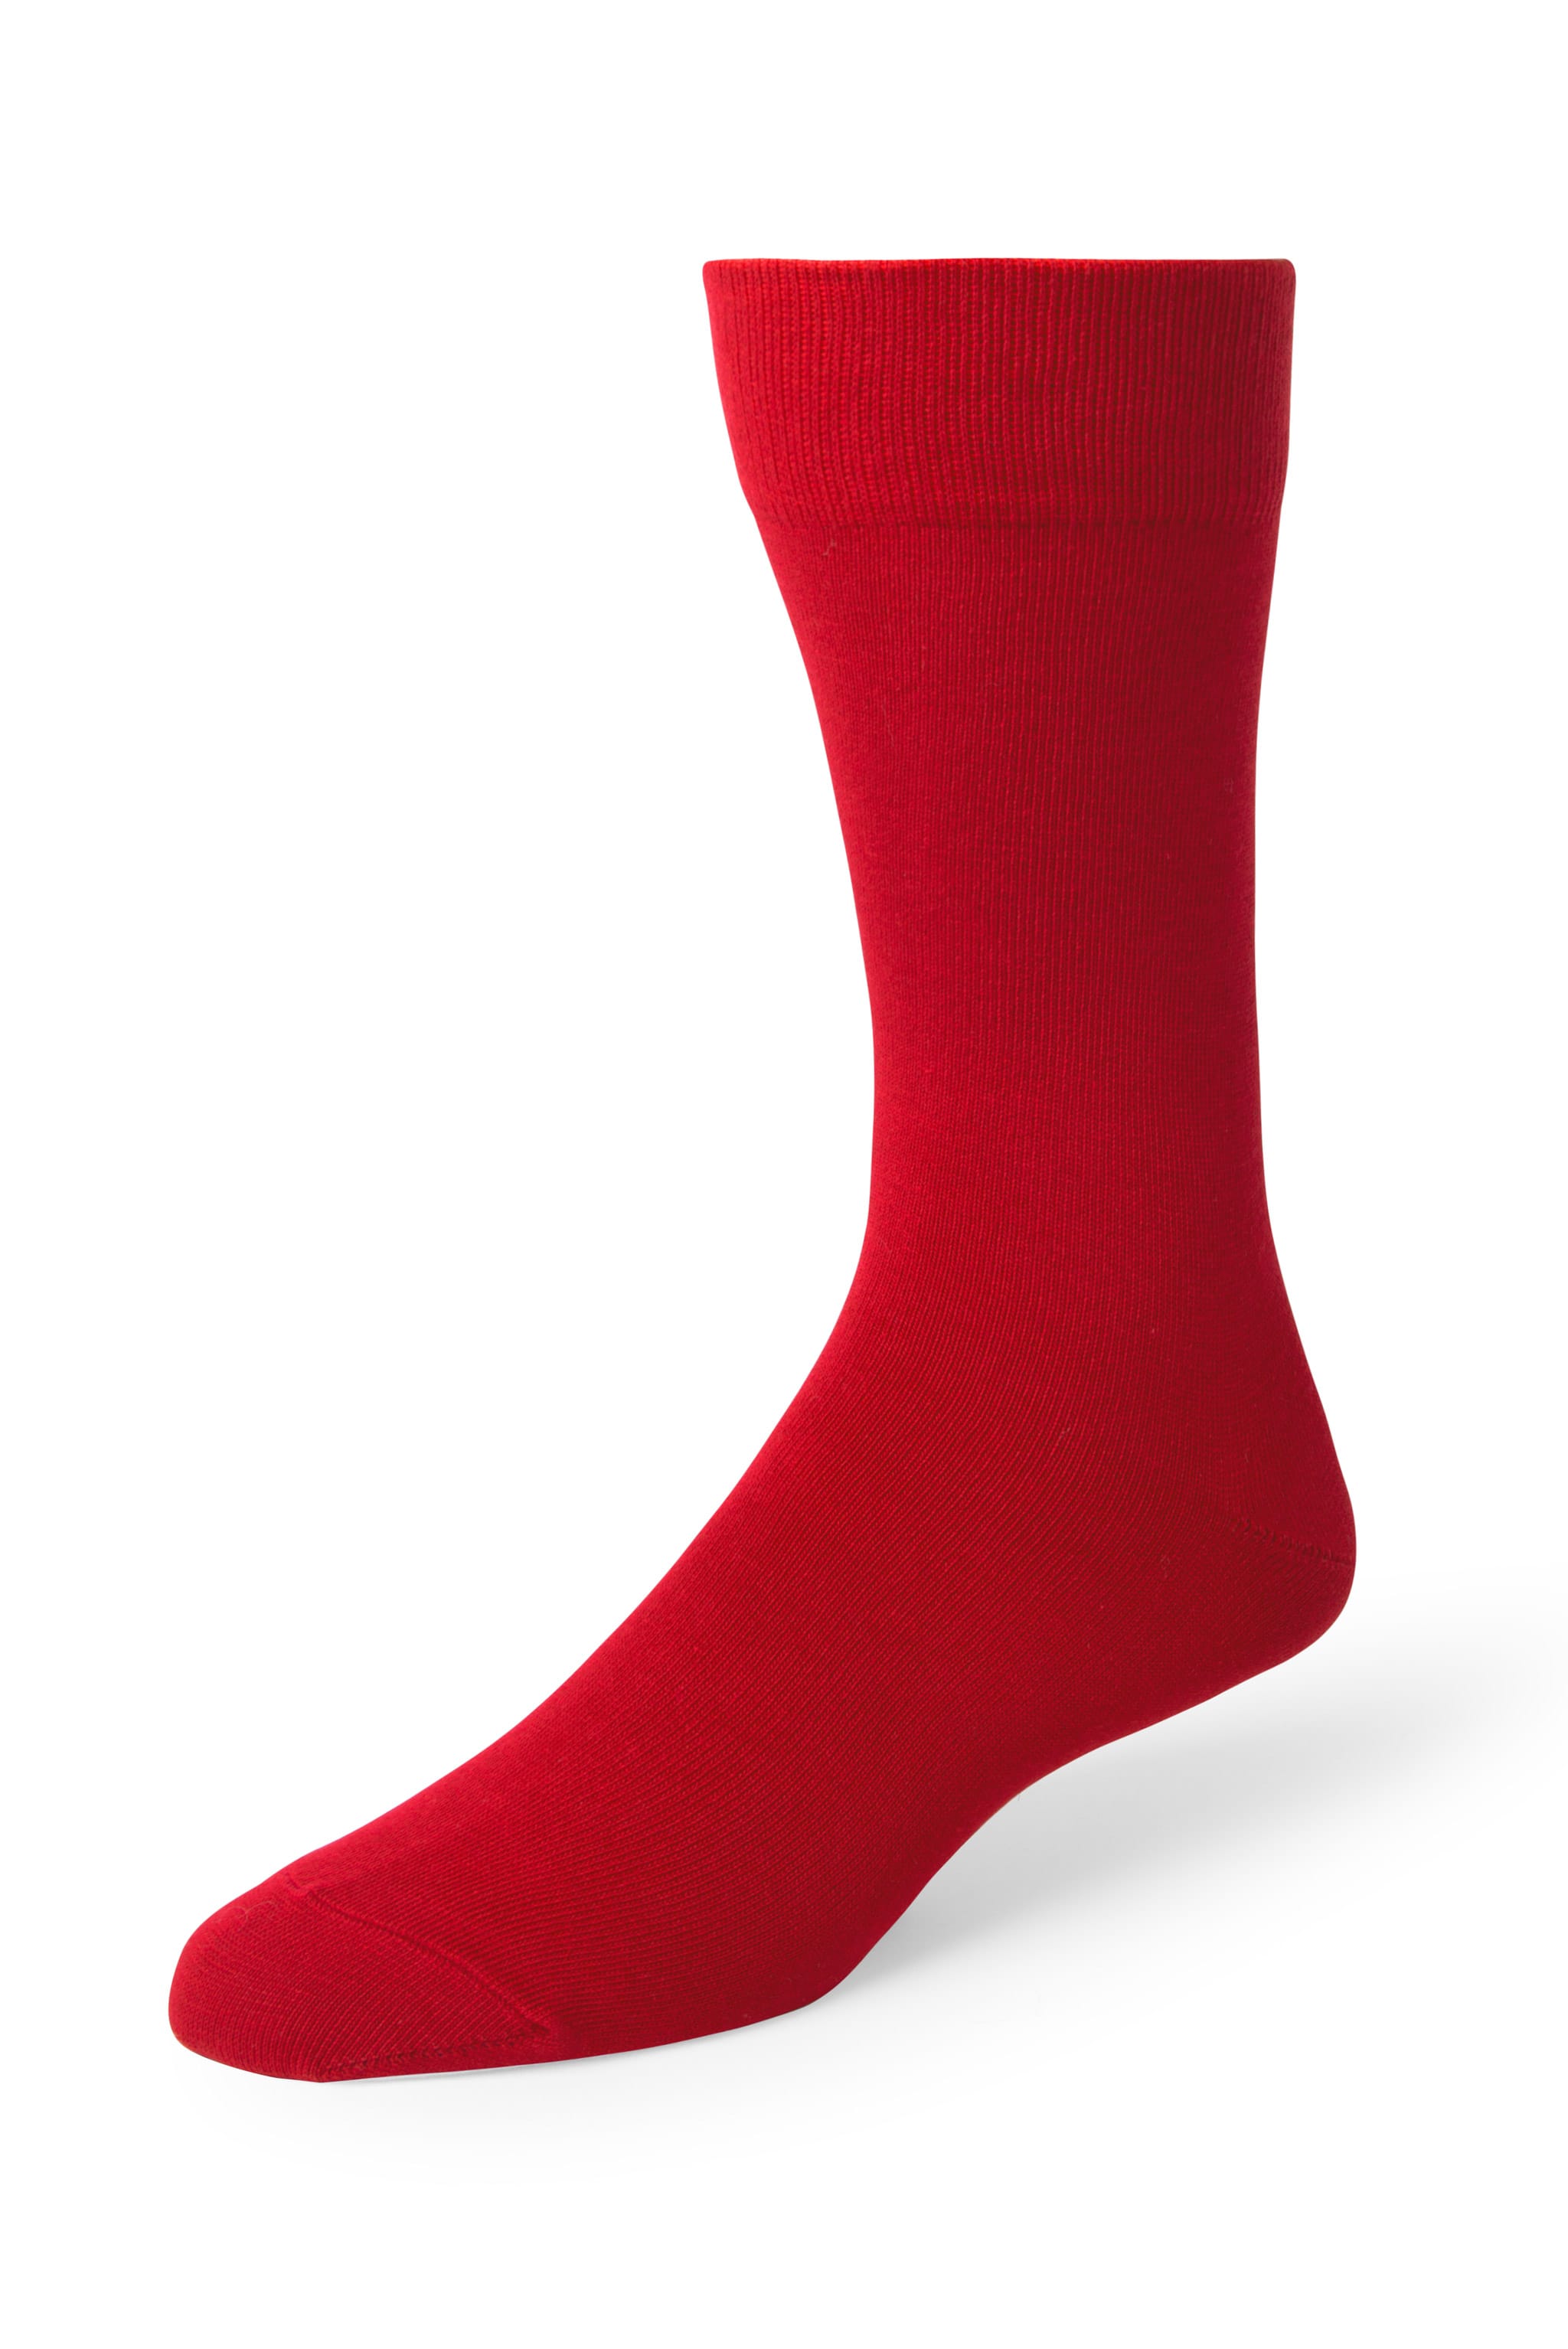 Ferrari Red Men's Dress Socks